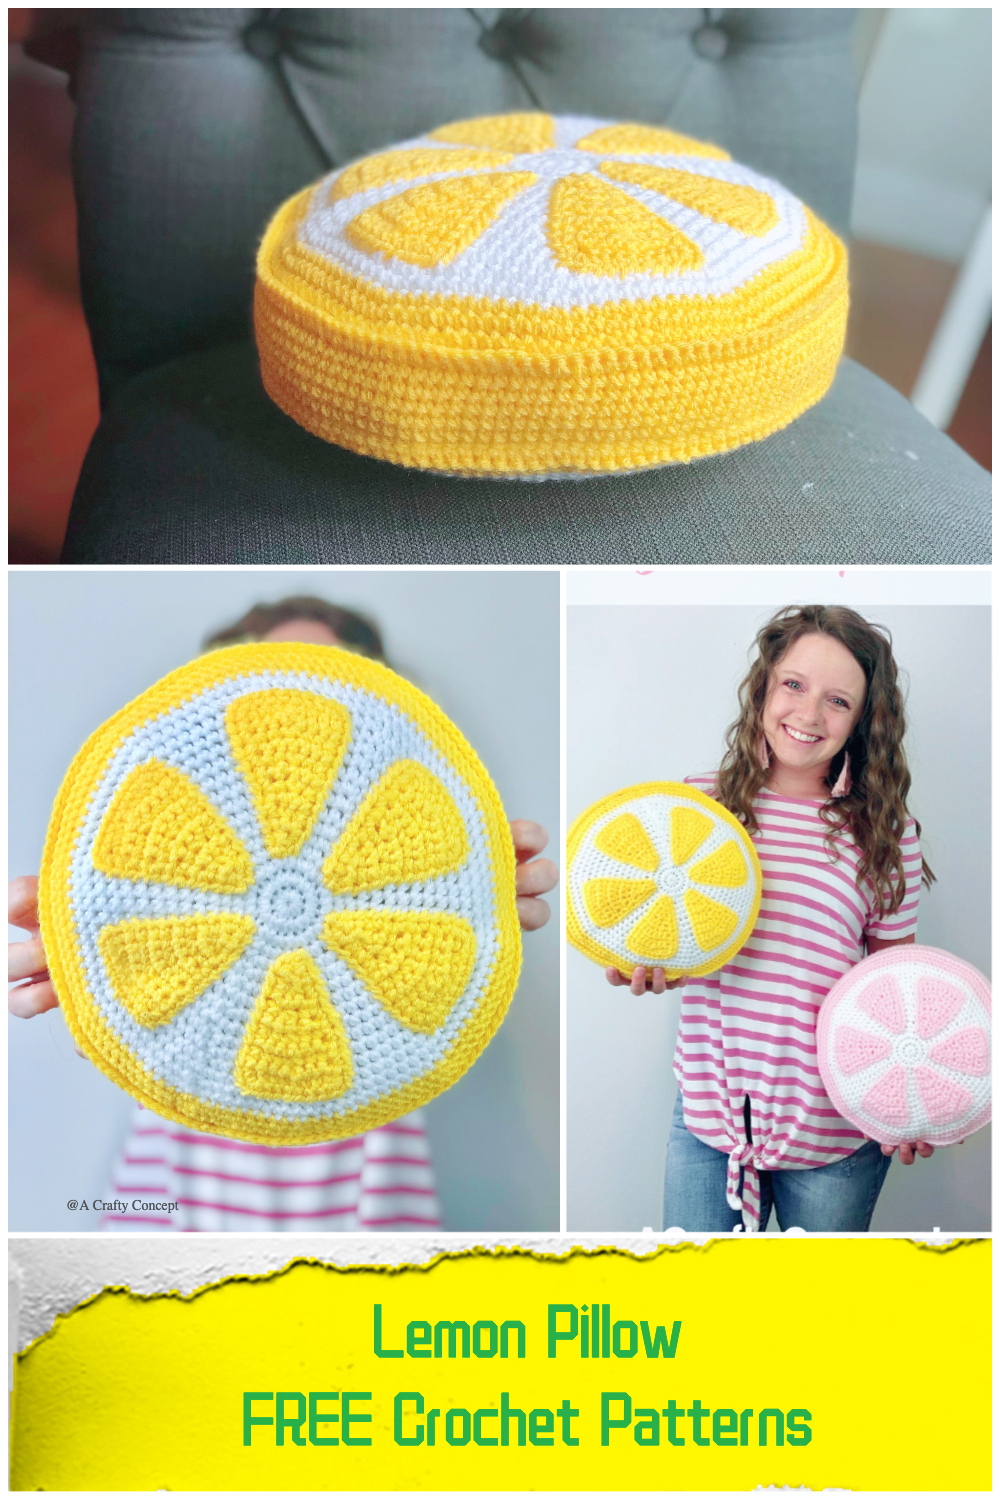 Lemon Pillow FREE Crochet Patterns